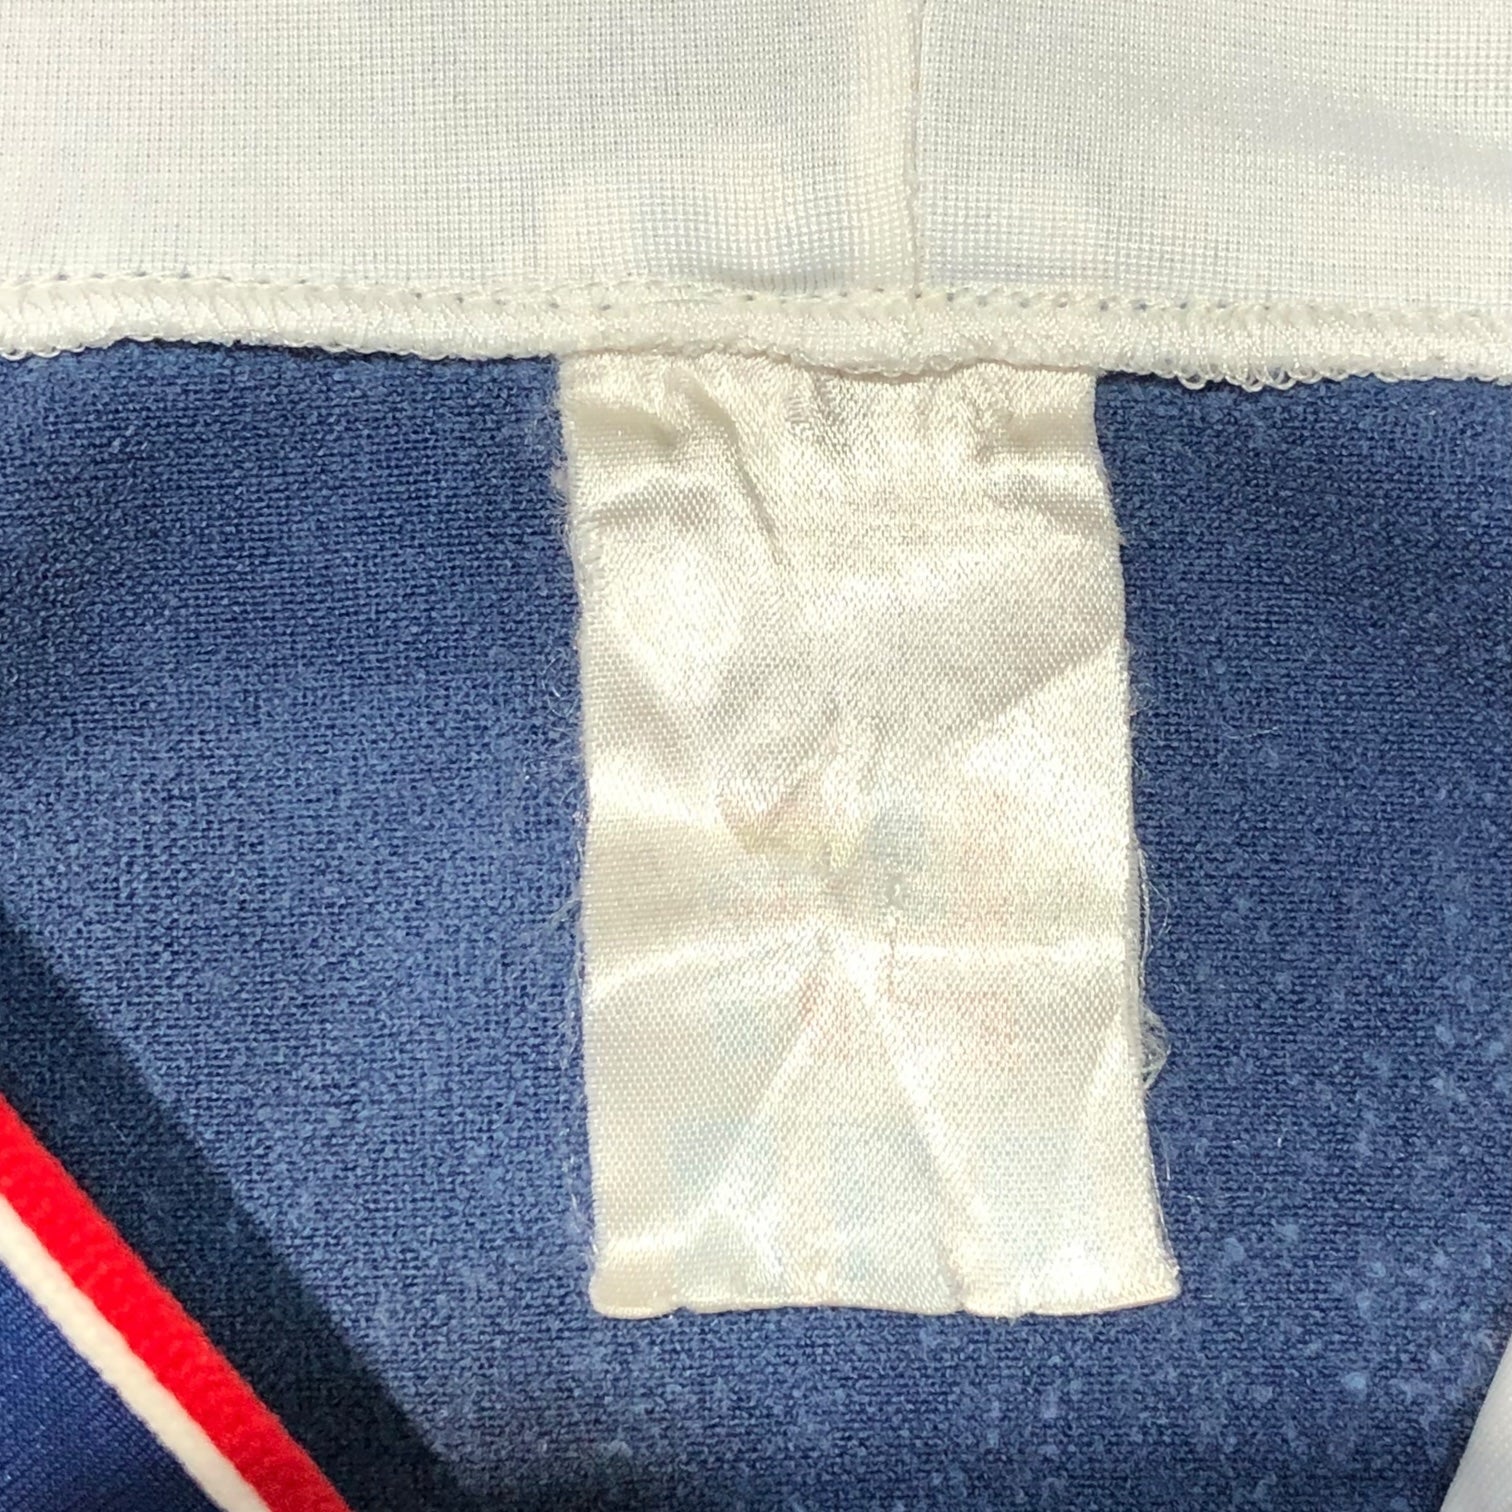 adidas(アディダス) 80's vintage hooded track jacket ヴィンテージ フーデッド トラック ジャケット US M ネイビー×ホワイト×レッド 80年代 ハンガリー製 万国旗タグ